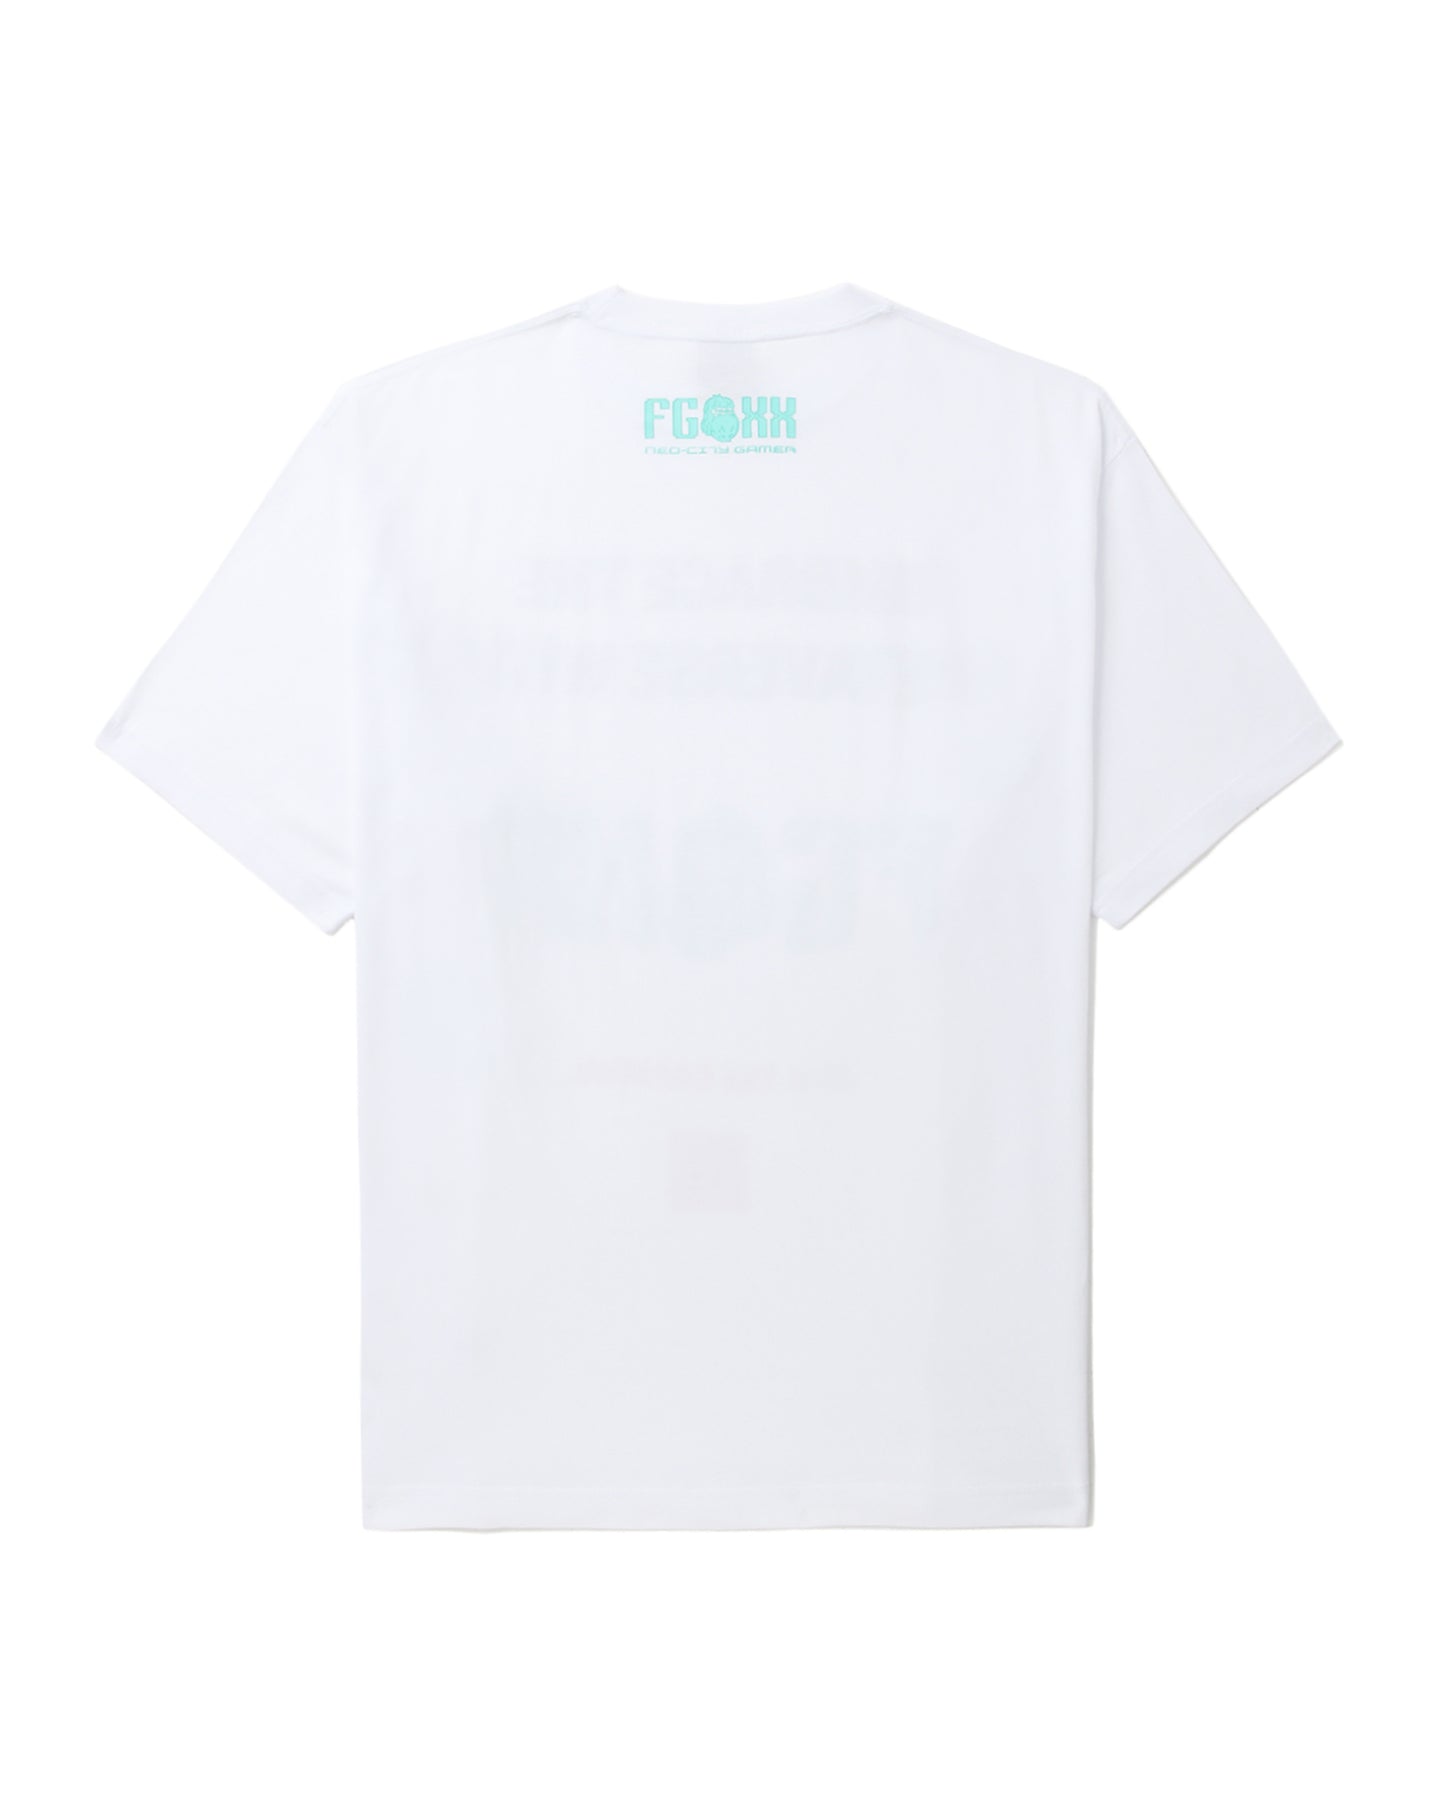 Men's - Embrace The Metaverse White T-shirt